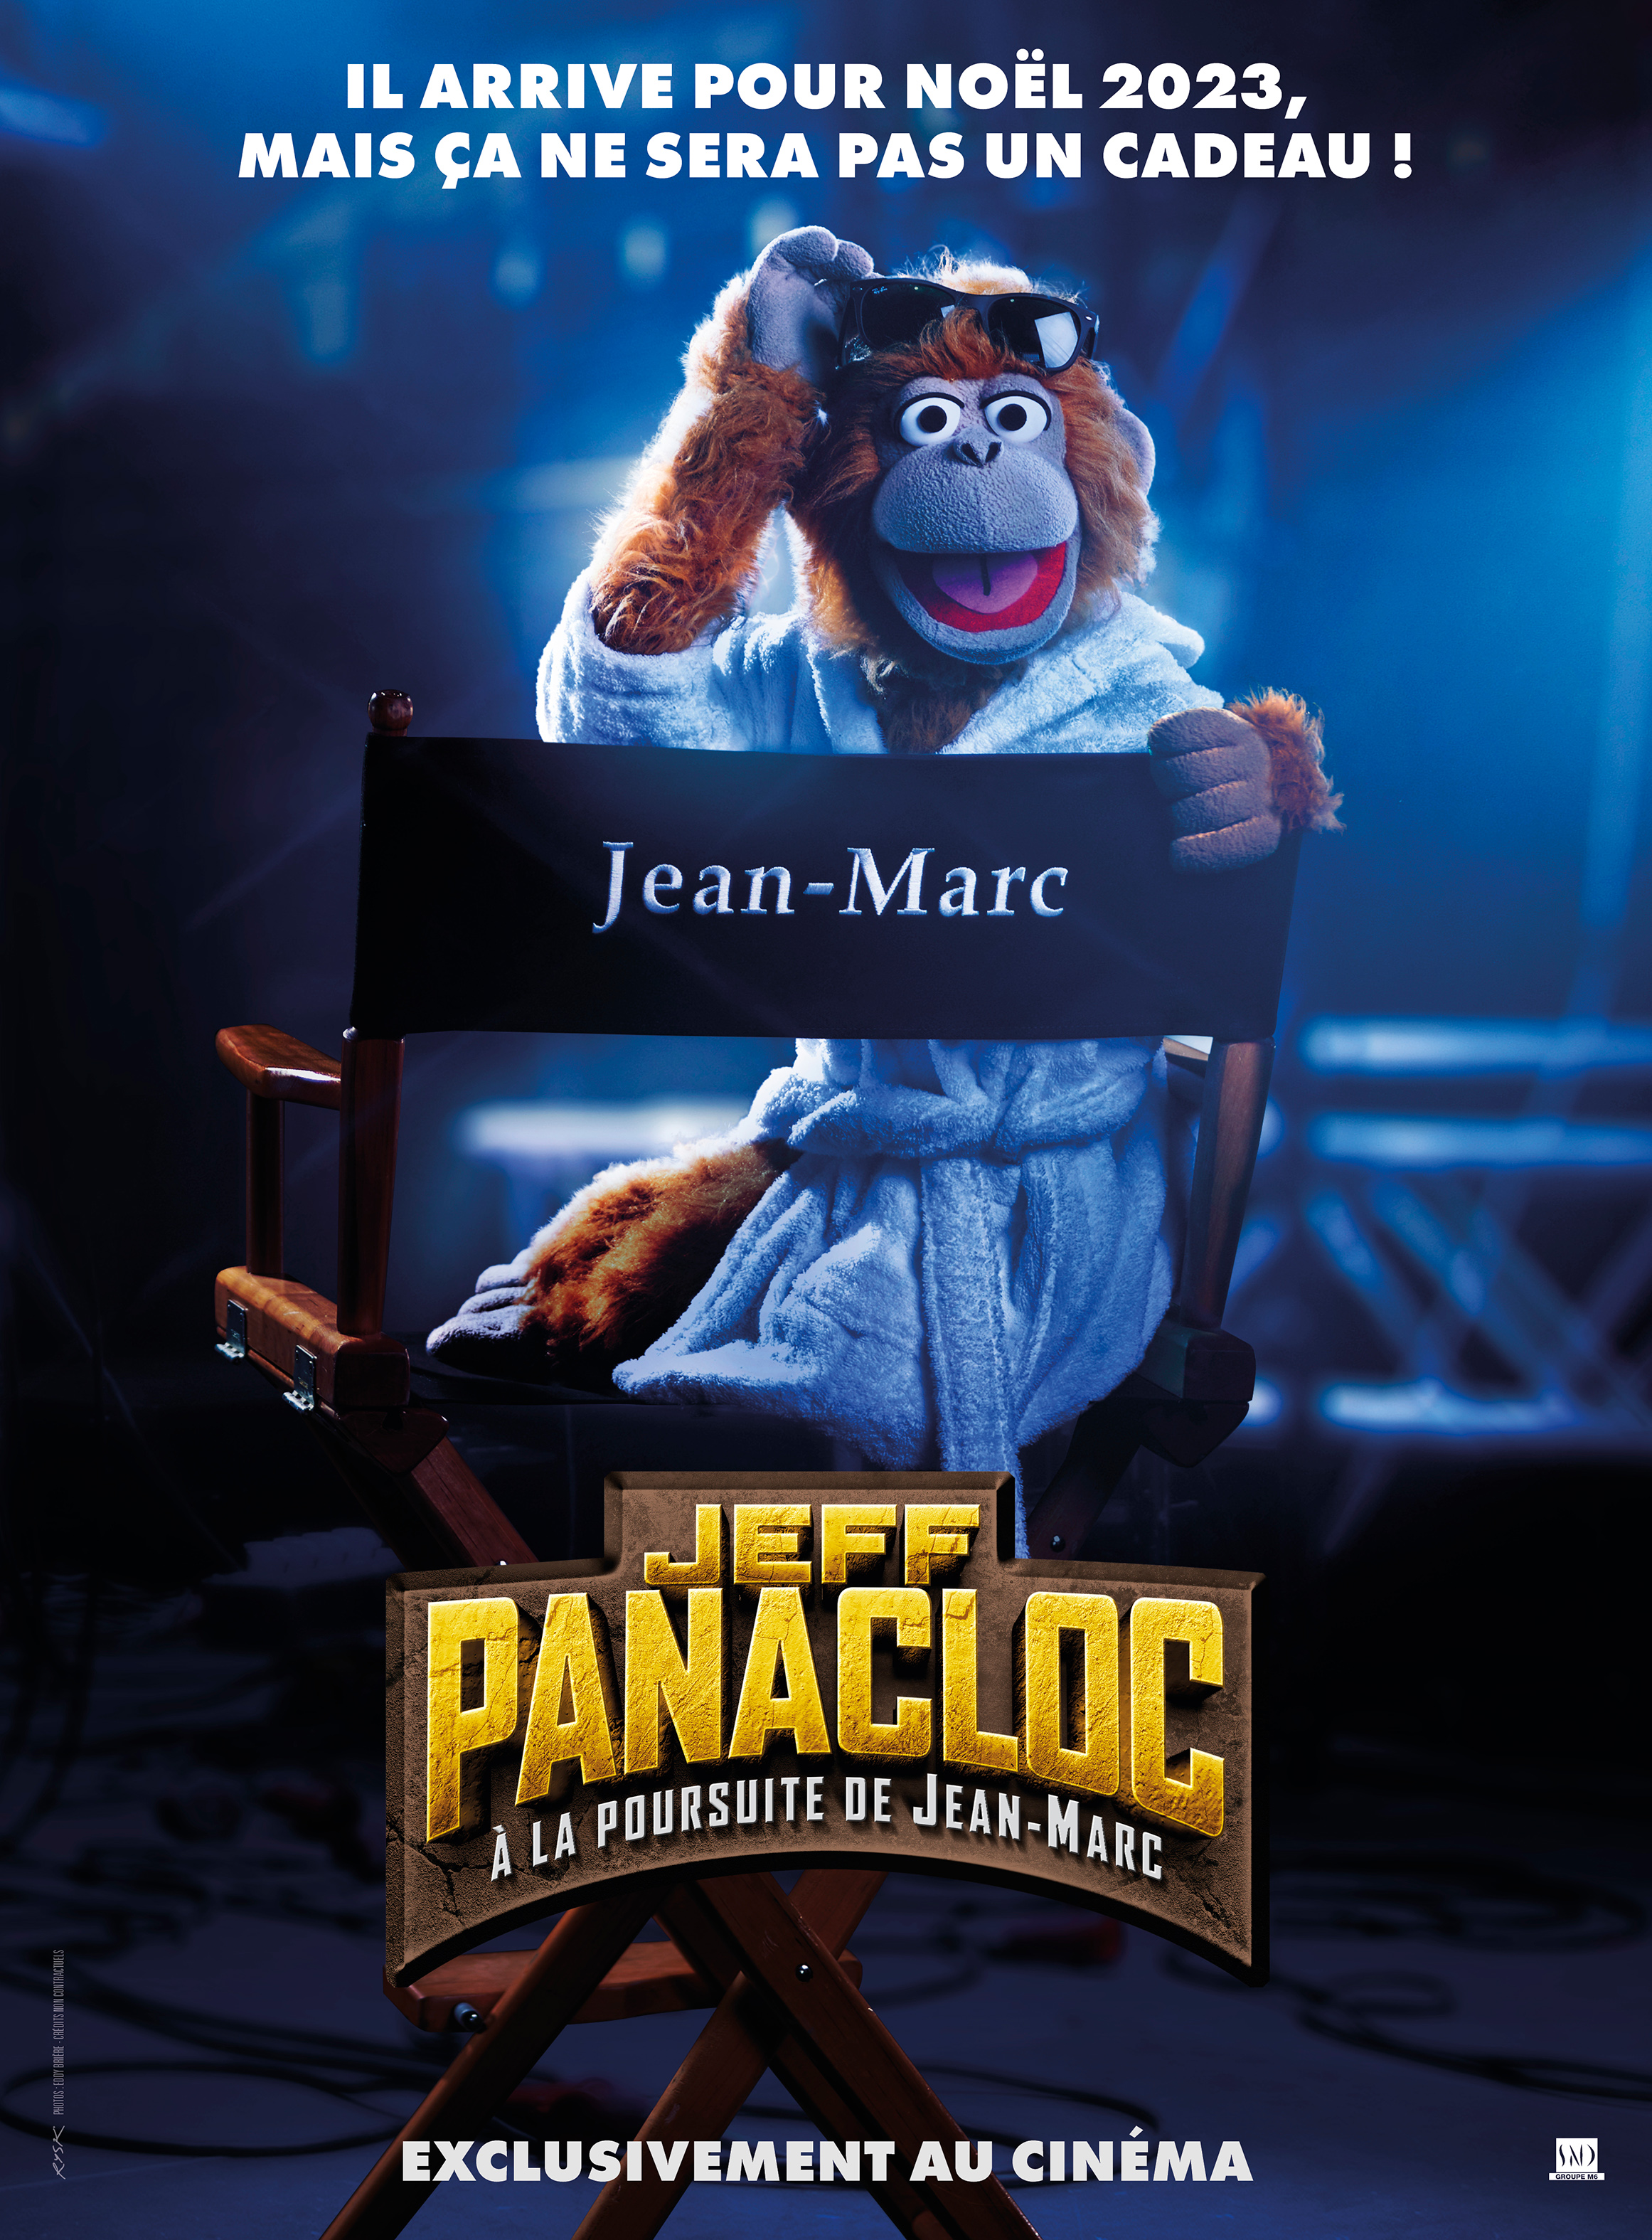 Plein de choses ont été coupées » : les blagues de Jean-Marc, la  marionnette de Jeff Panacloc, censurées dans Mask Singer - Voici